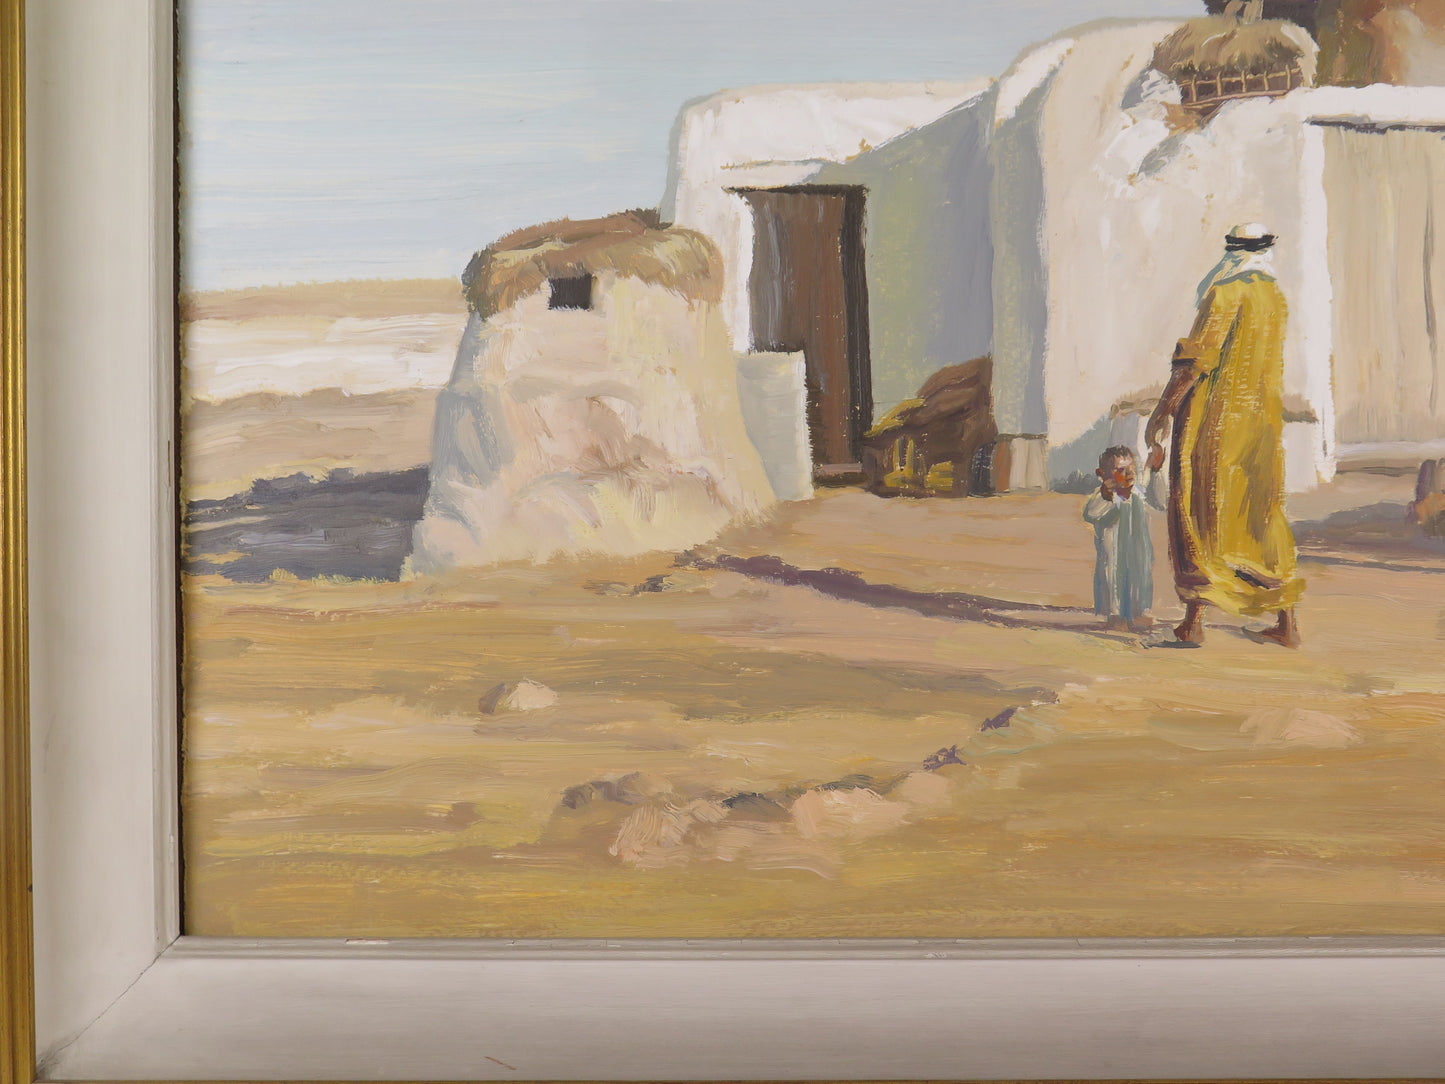 Dipinto orientalista opera del pittore Piero Monti 1910-1994 quadro acquerello firmato VS11